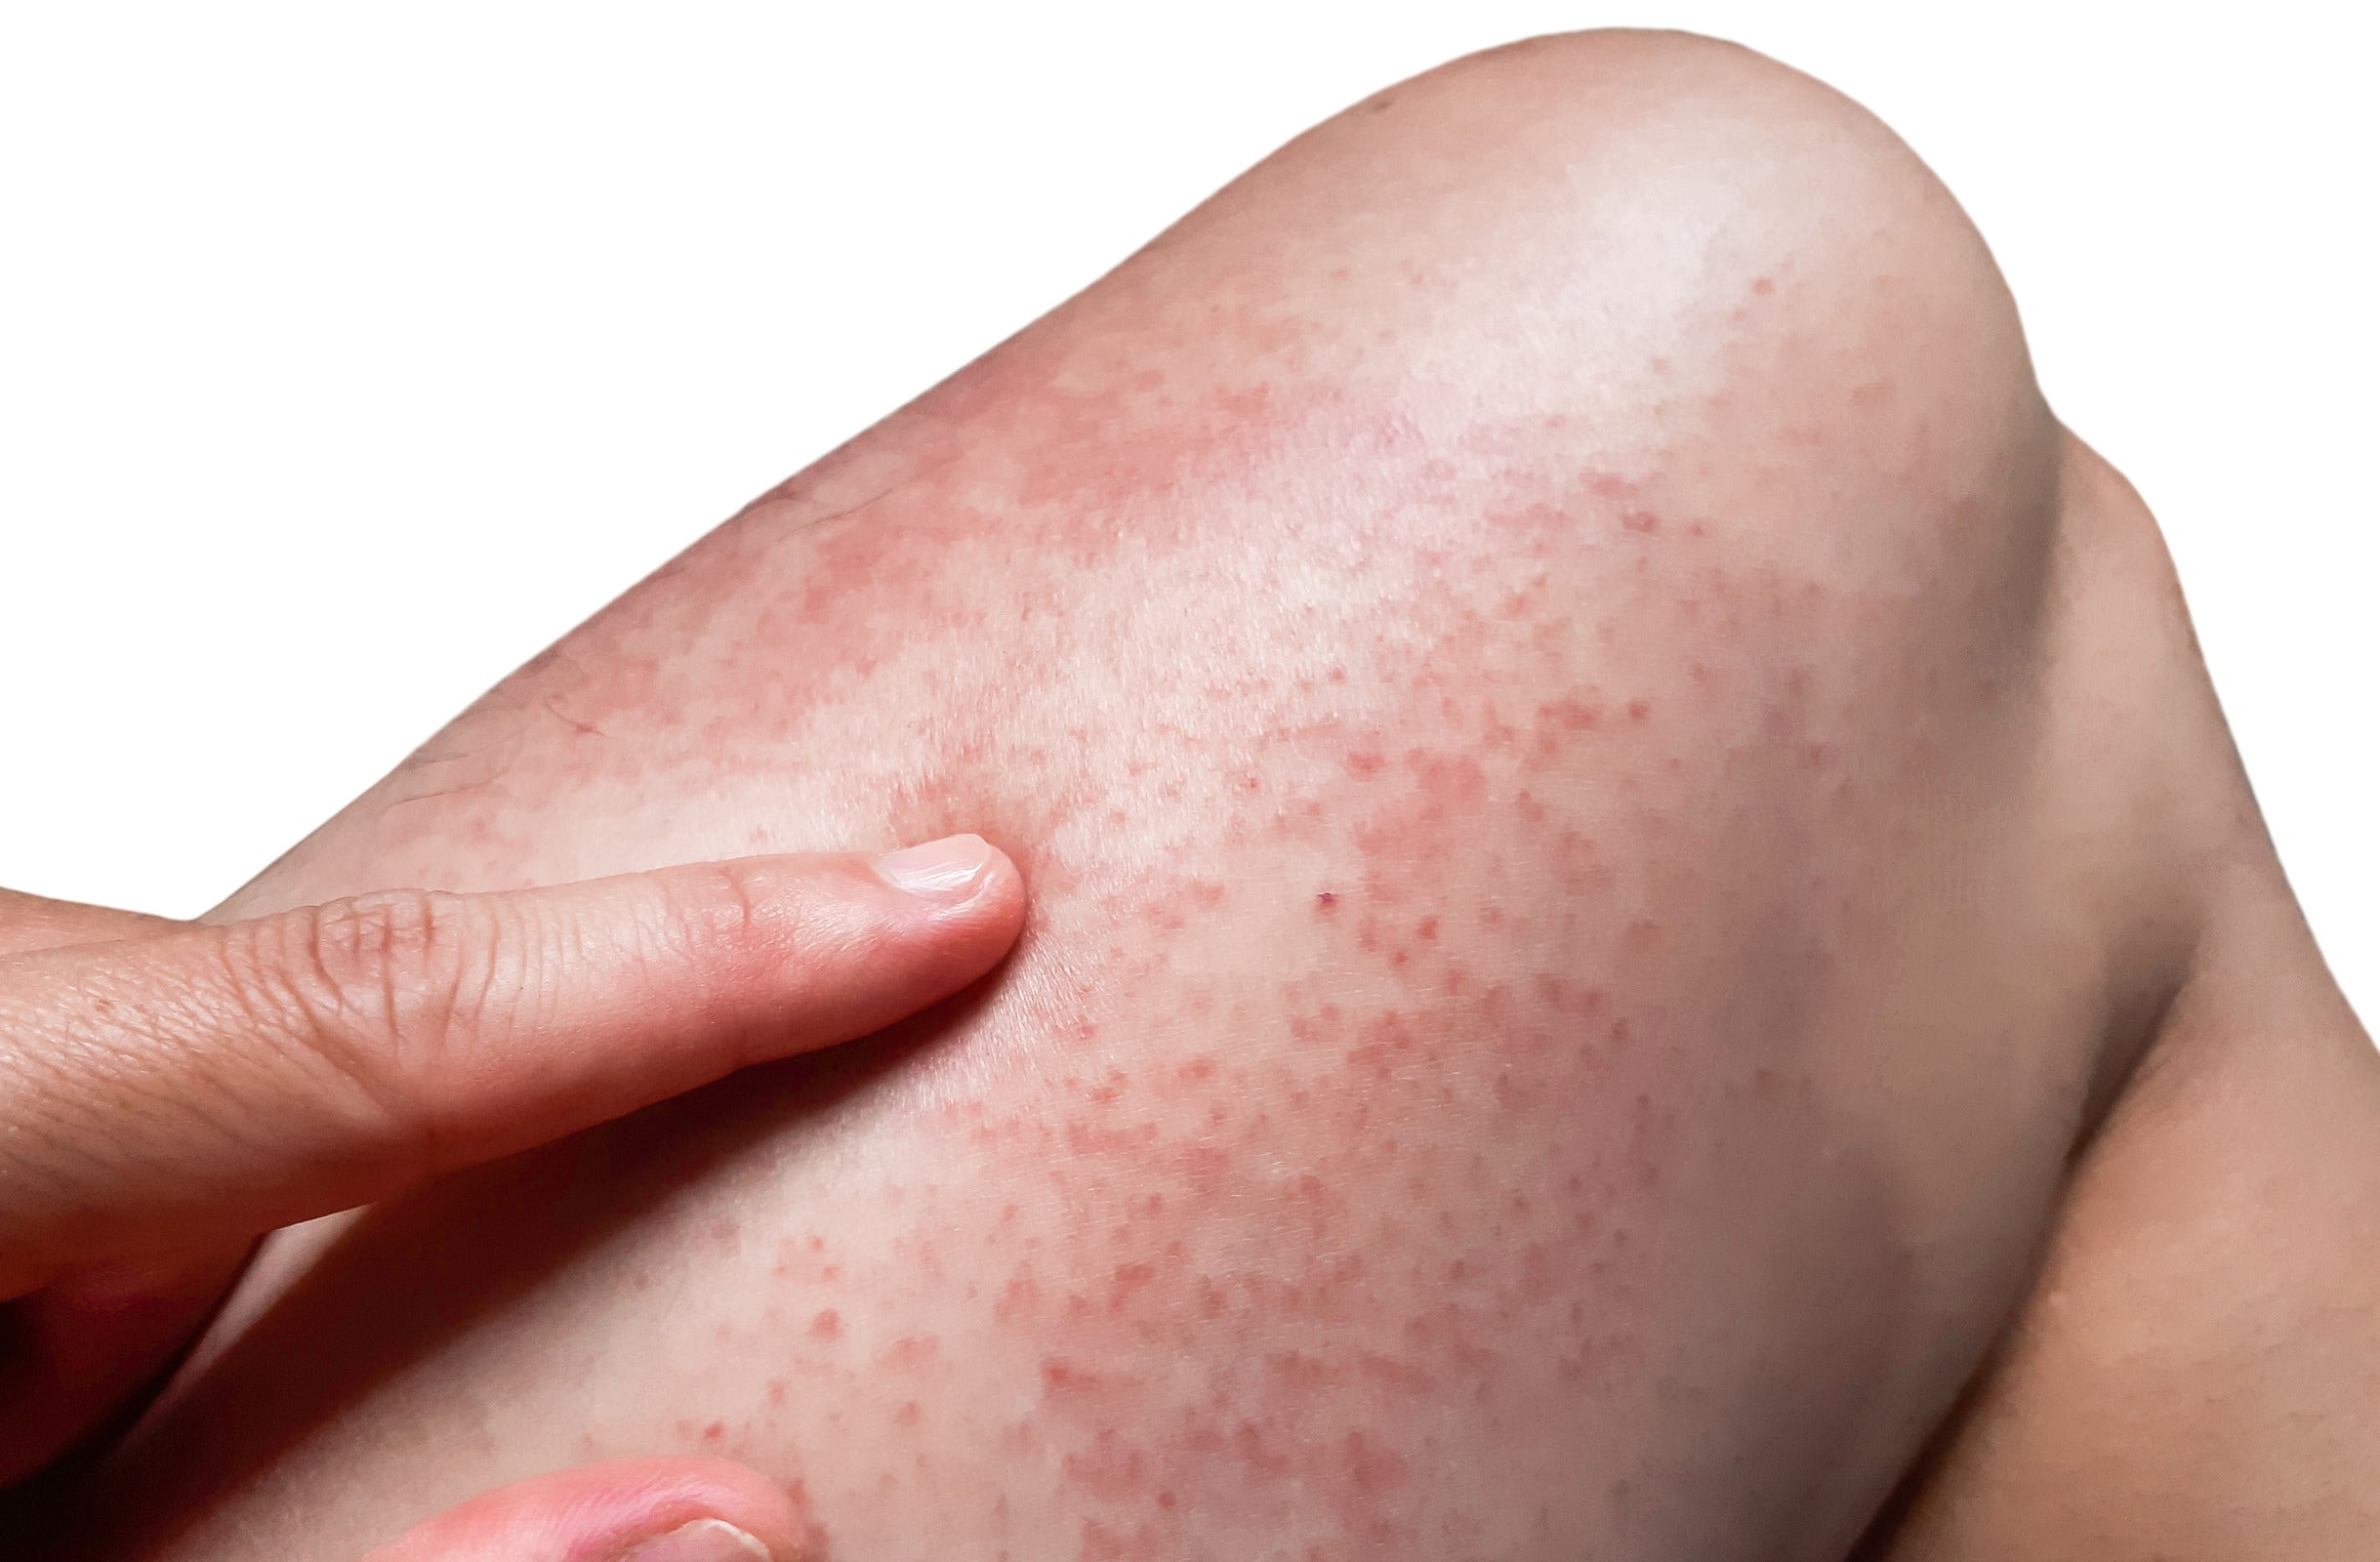 Skin irritation from Brazilian waxing